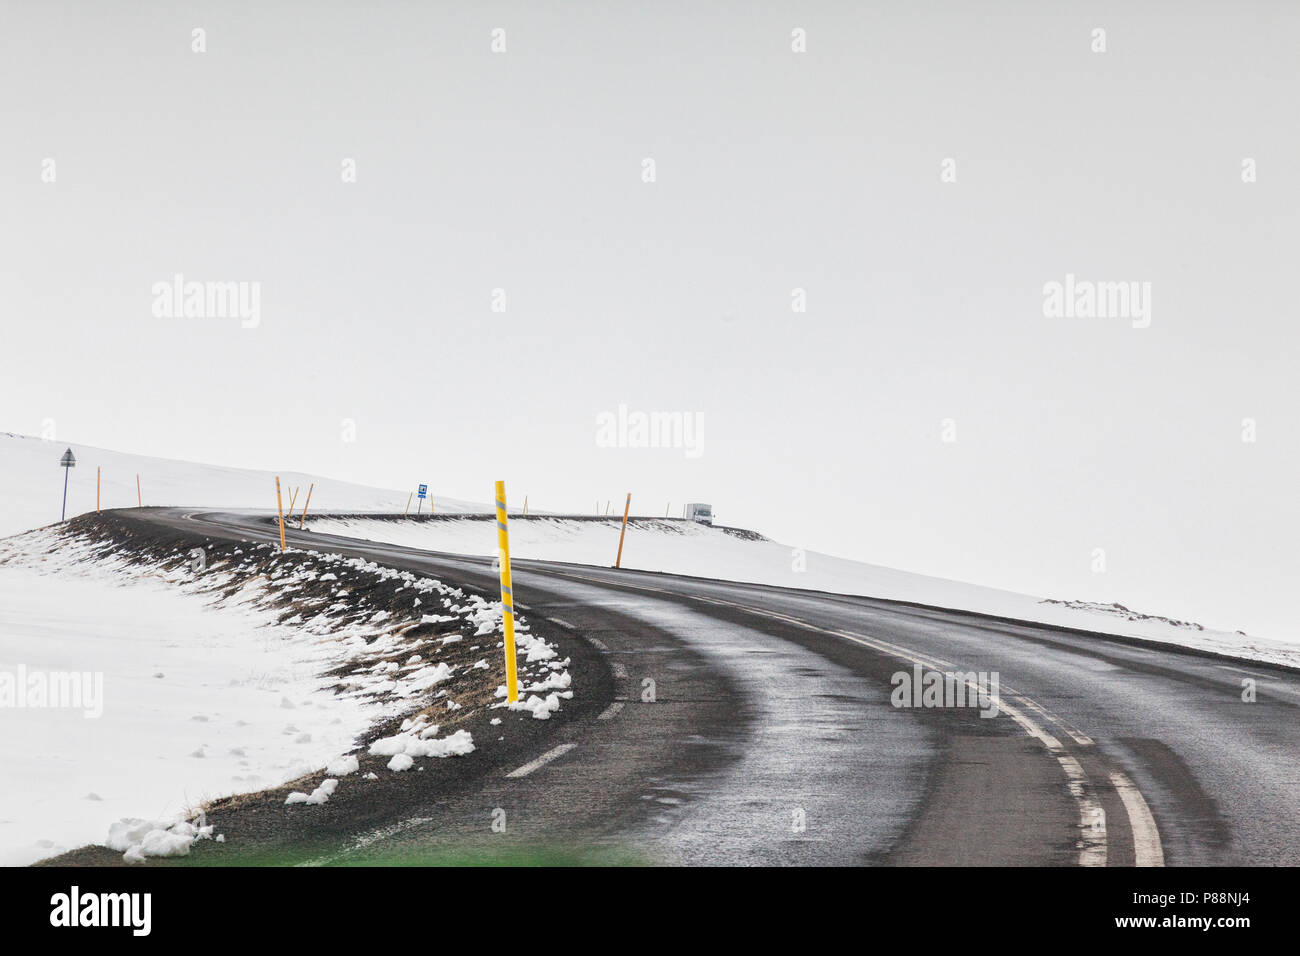 Durch die Scheibe geschossen von einer asphaltierten Straße im Osten Islands an nebligen Wetter, mit einem Doppel- und einem entfernten Lkw oder Lkw. Stockfoto